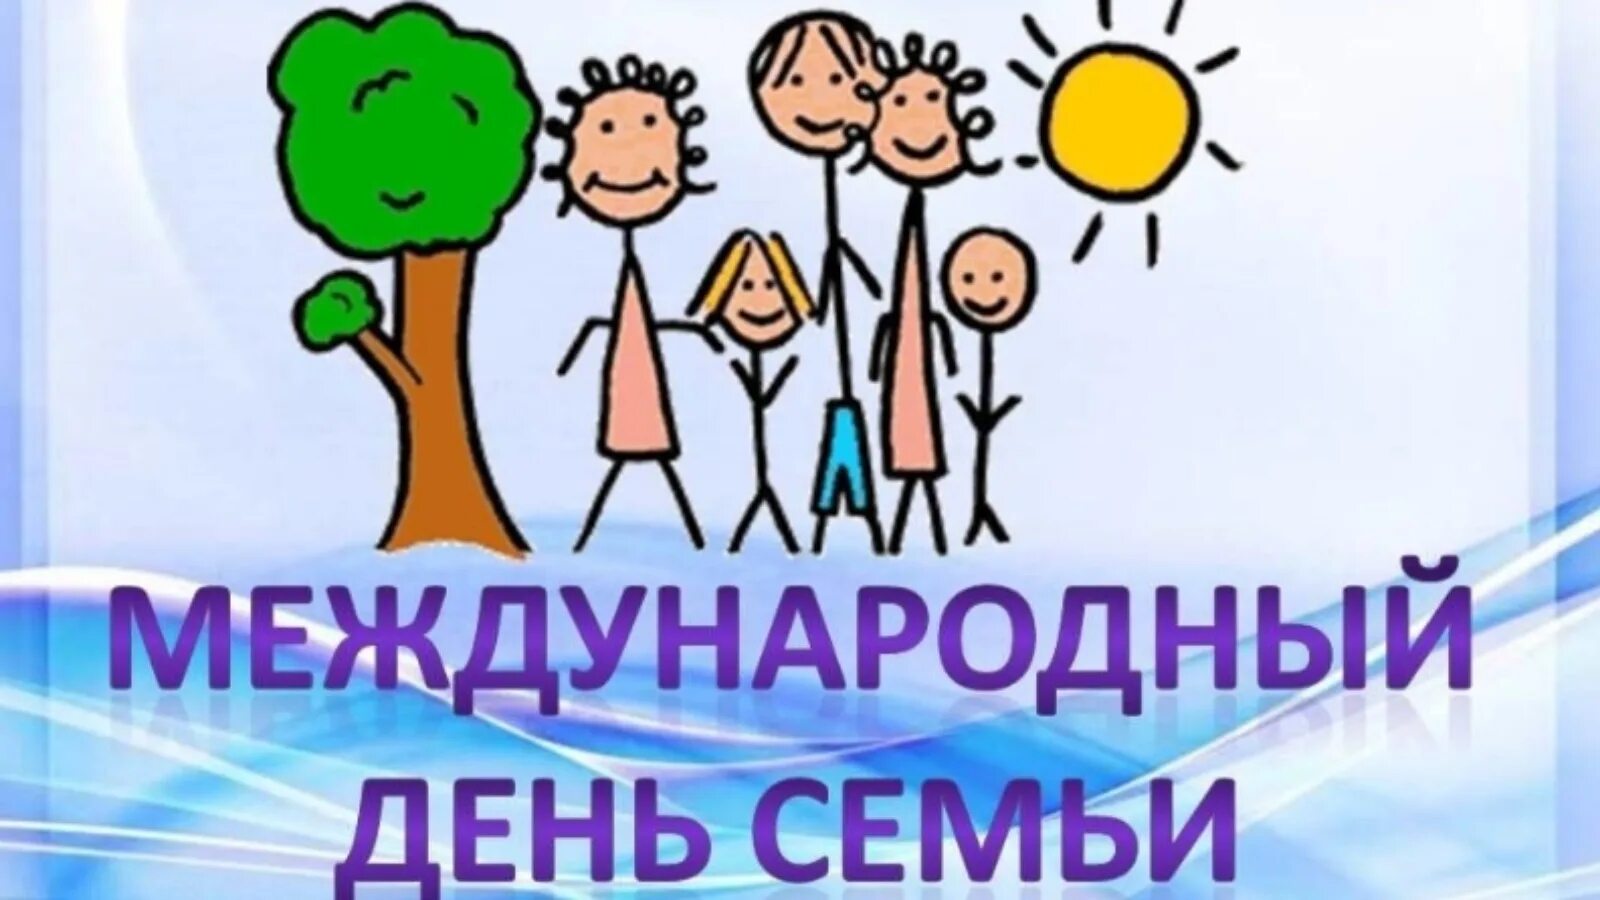 Международный день семьи. День семьи 15 мая. Международный день семьи поздравление. С днем семьи 15 мая поздравления.